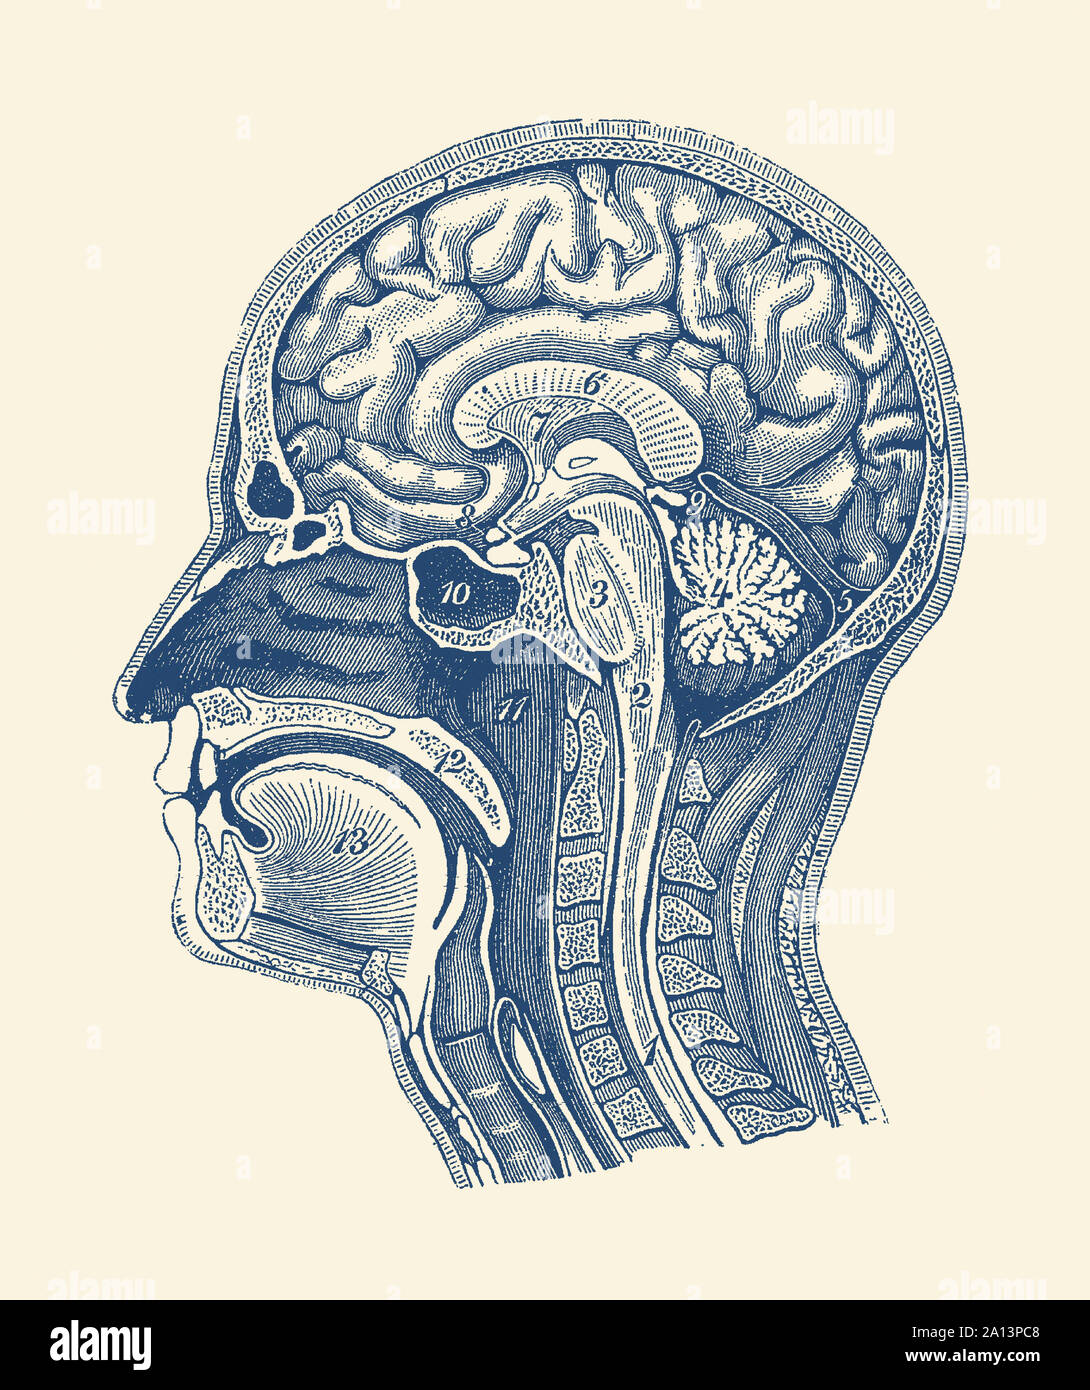 Schema mostrare le arterie del cervello, midollo spinale e anatomia facciale. Foto Stock